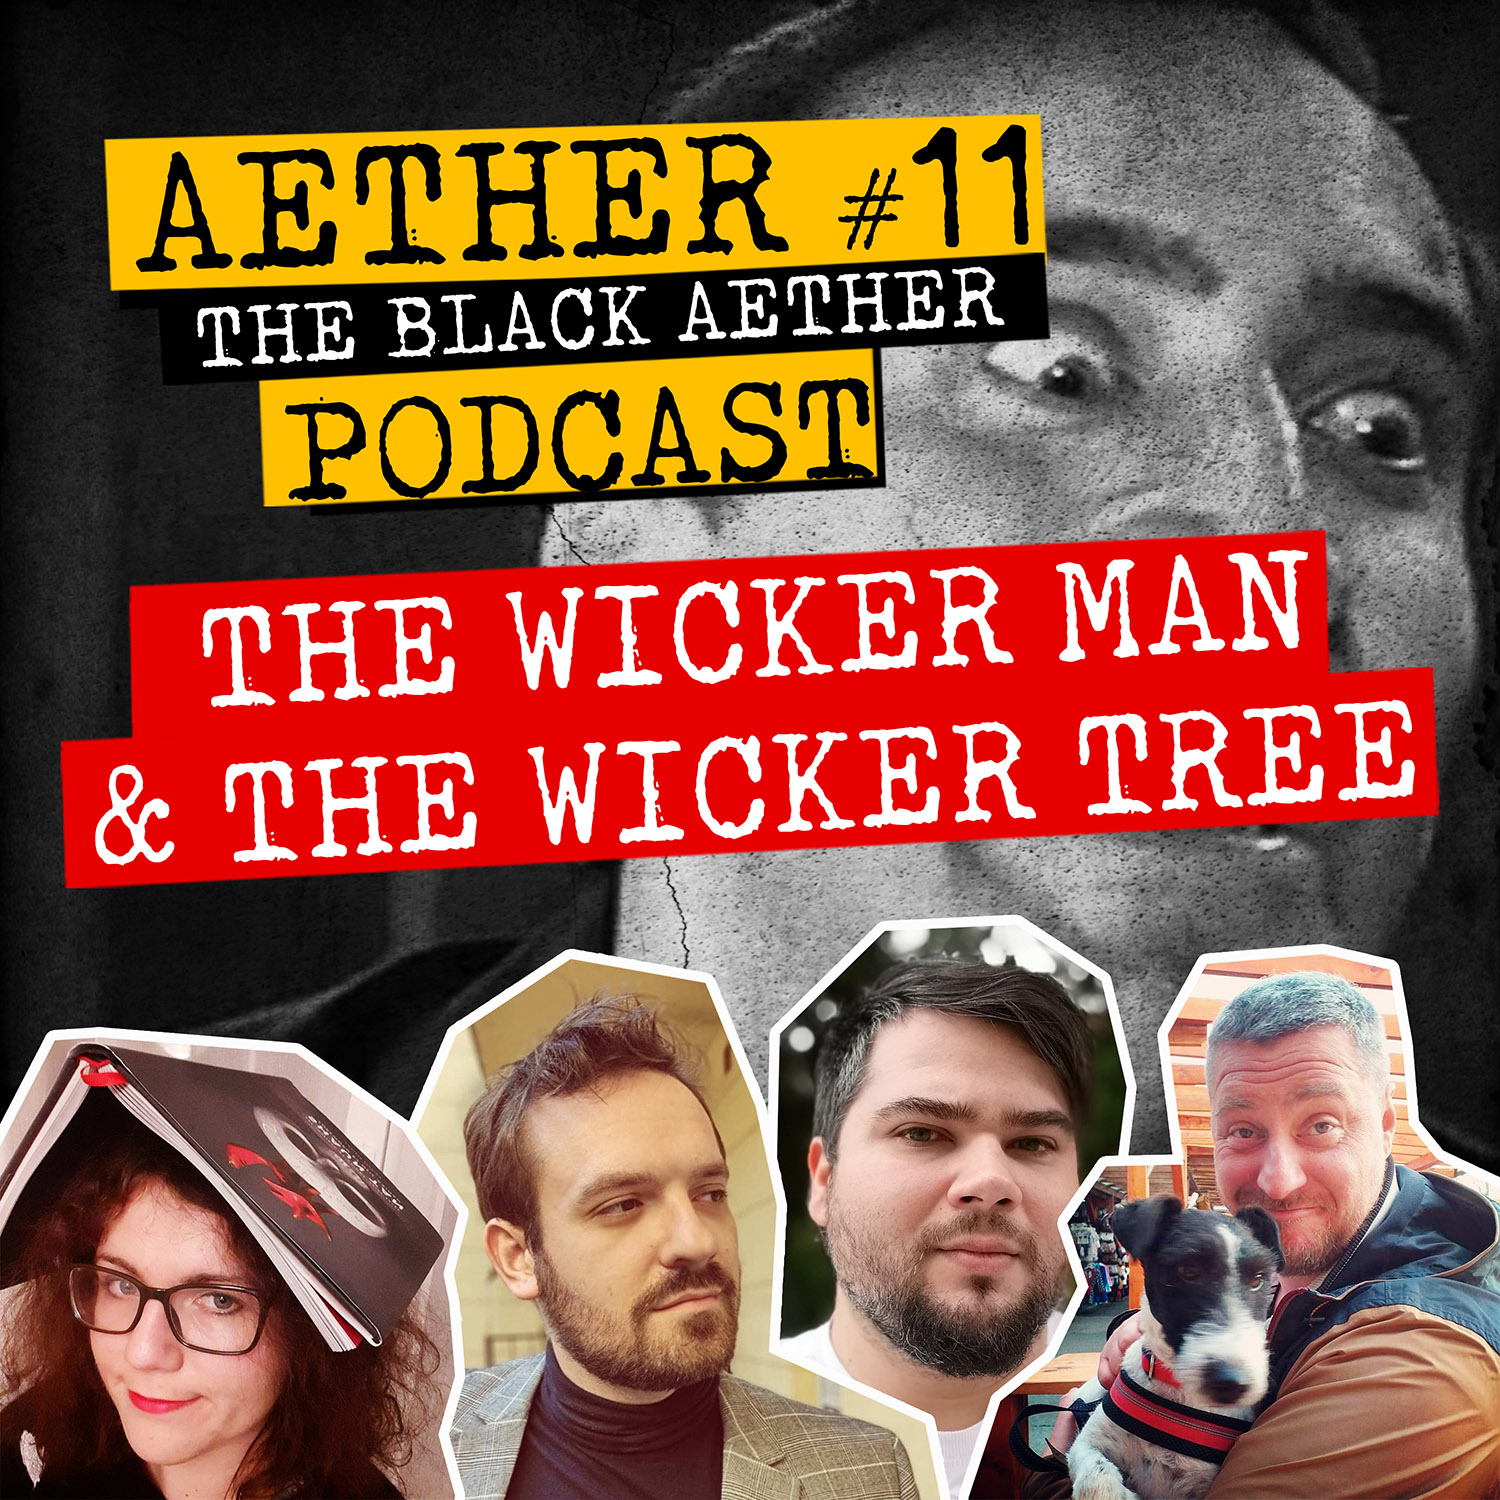 Aether #11 – The Wicker Man (2006) & The Wicker Tree